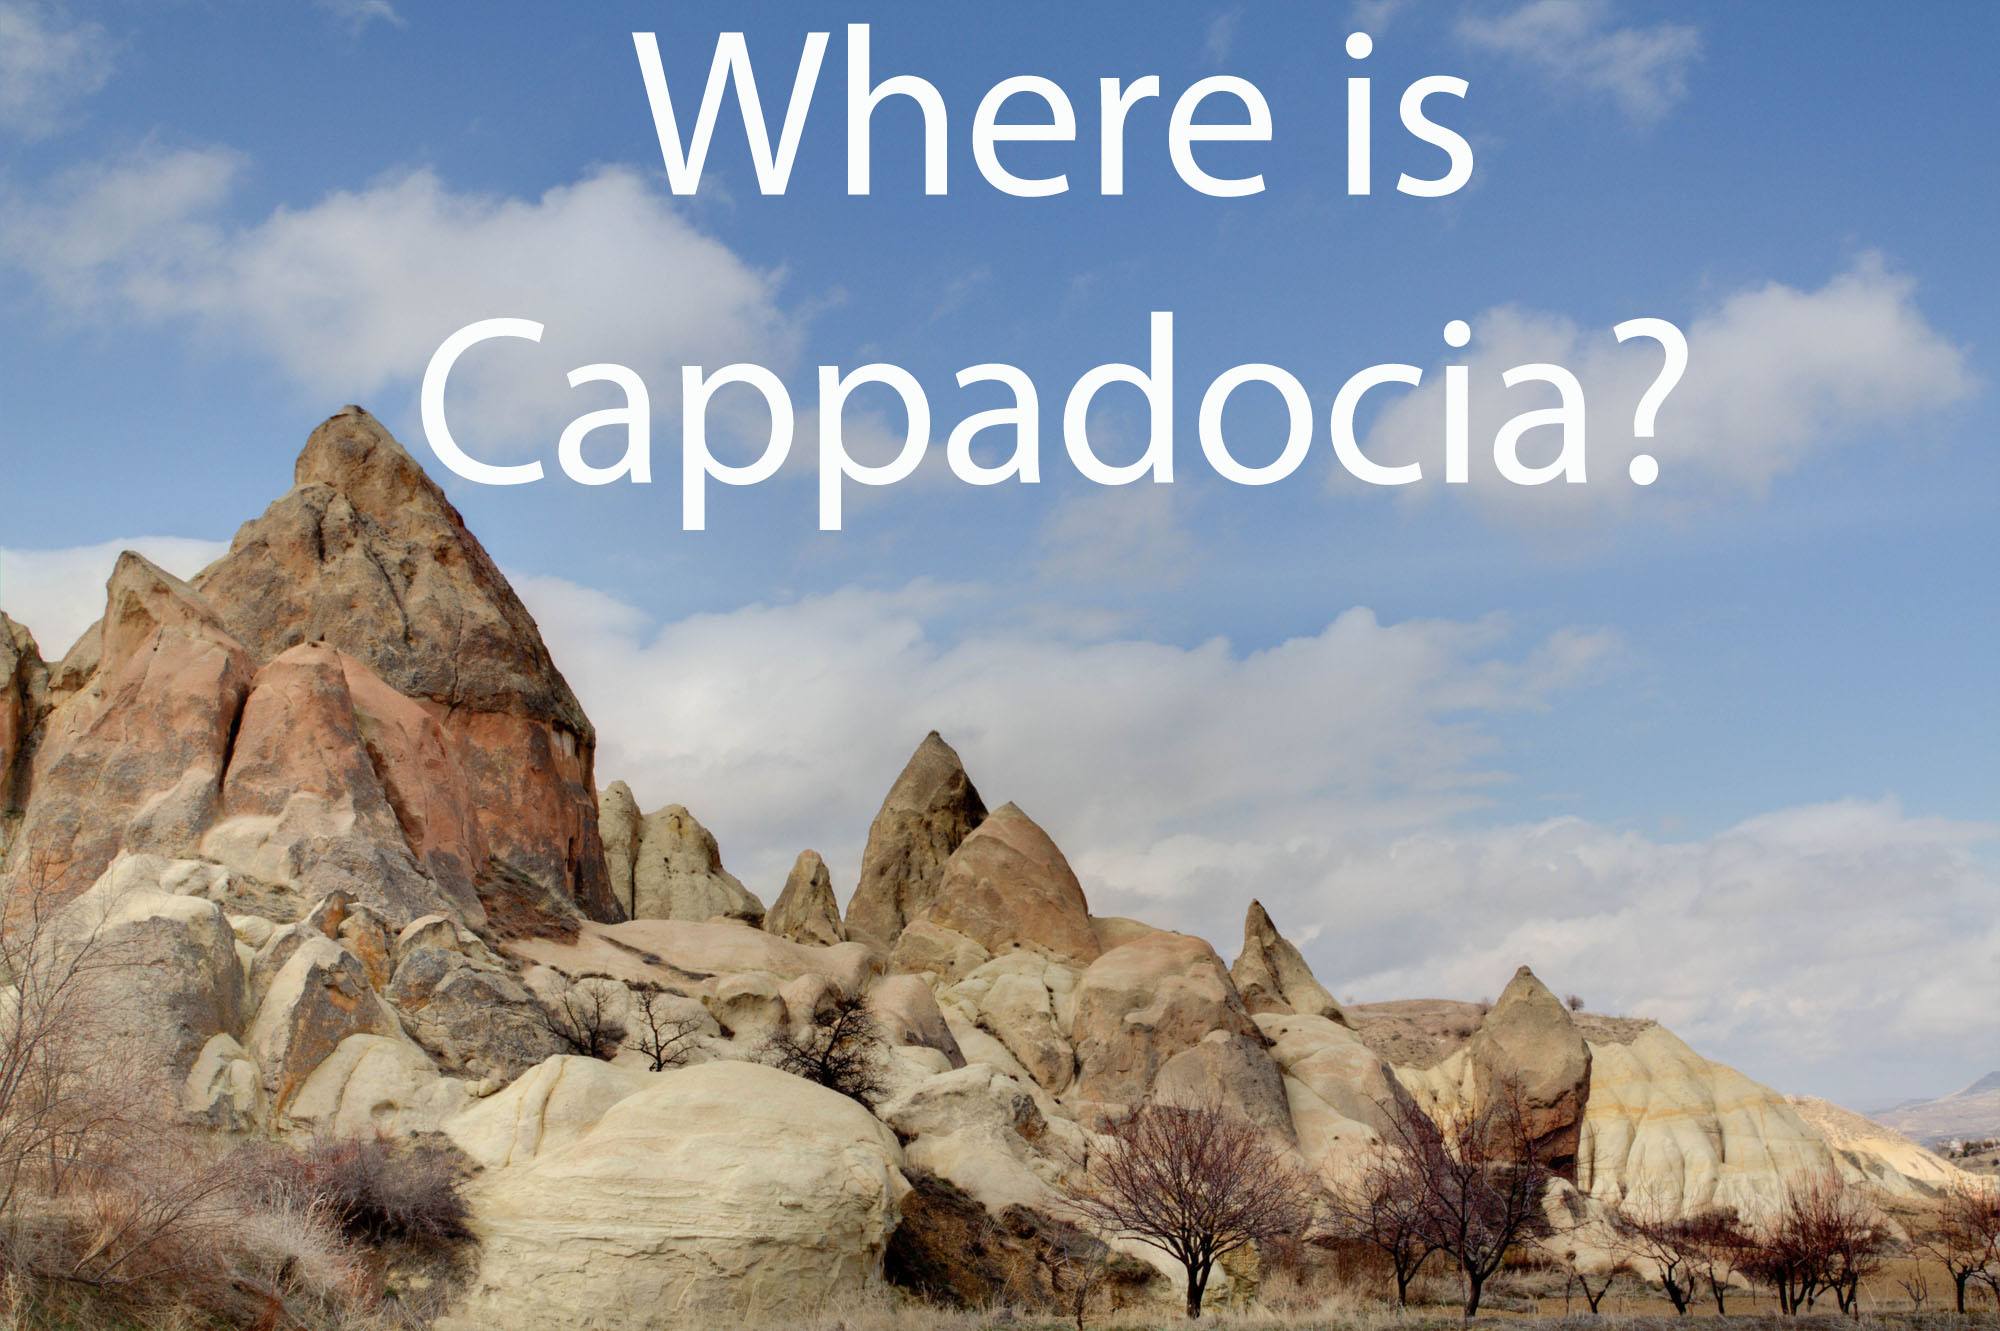 Where is Cappadocia?